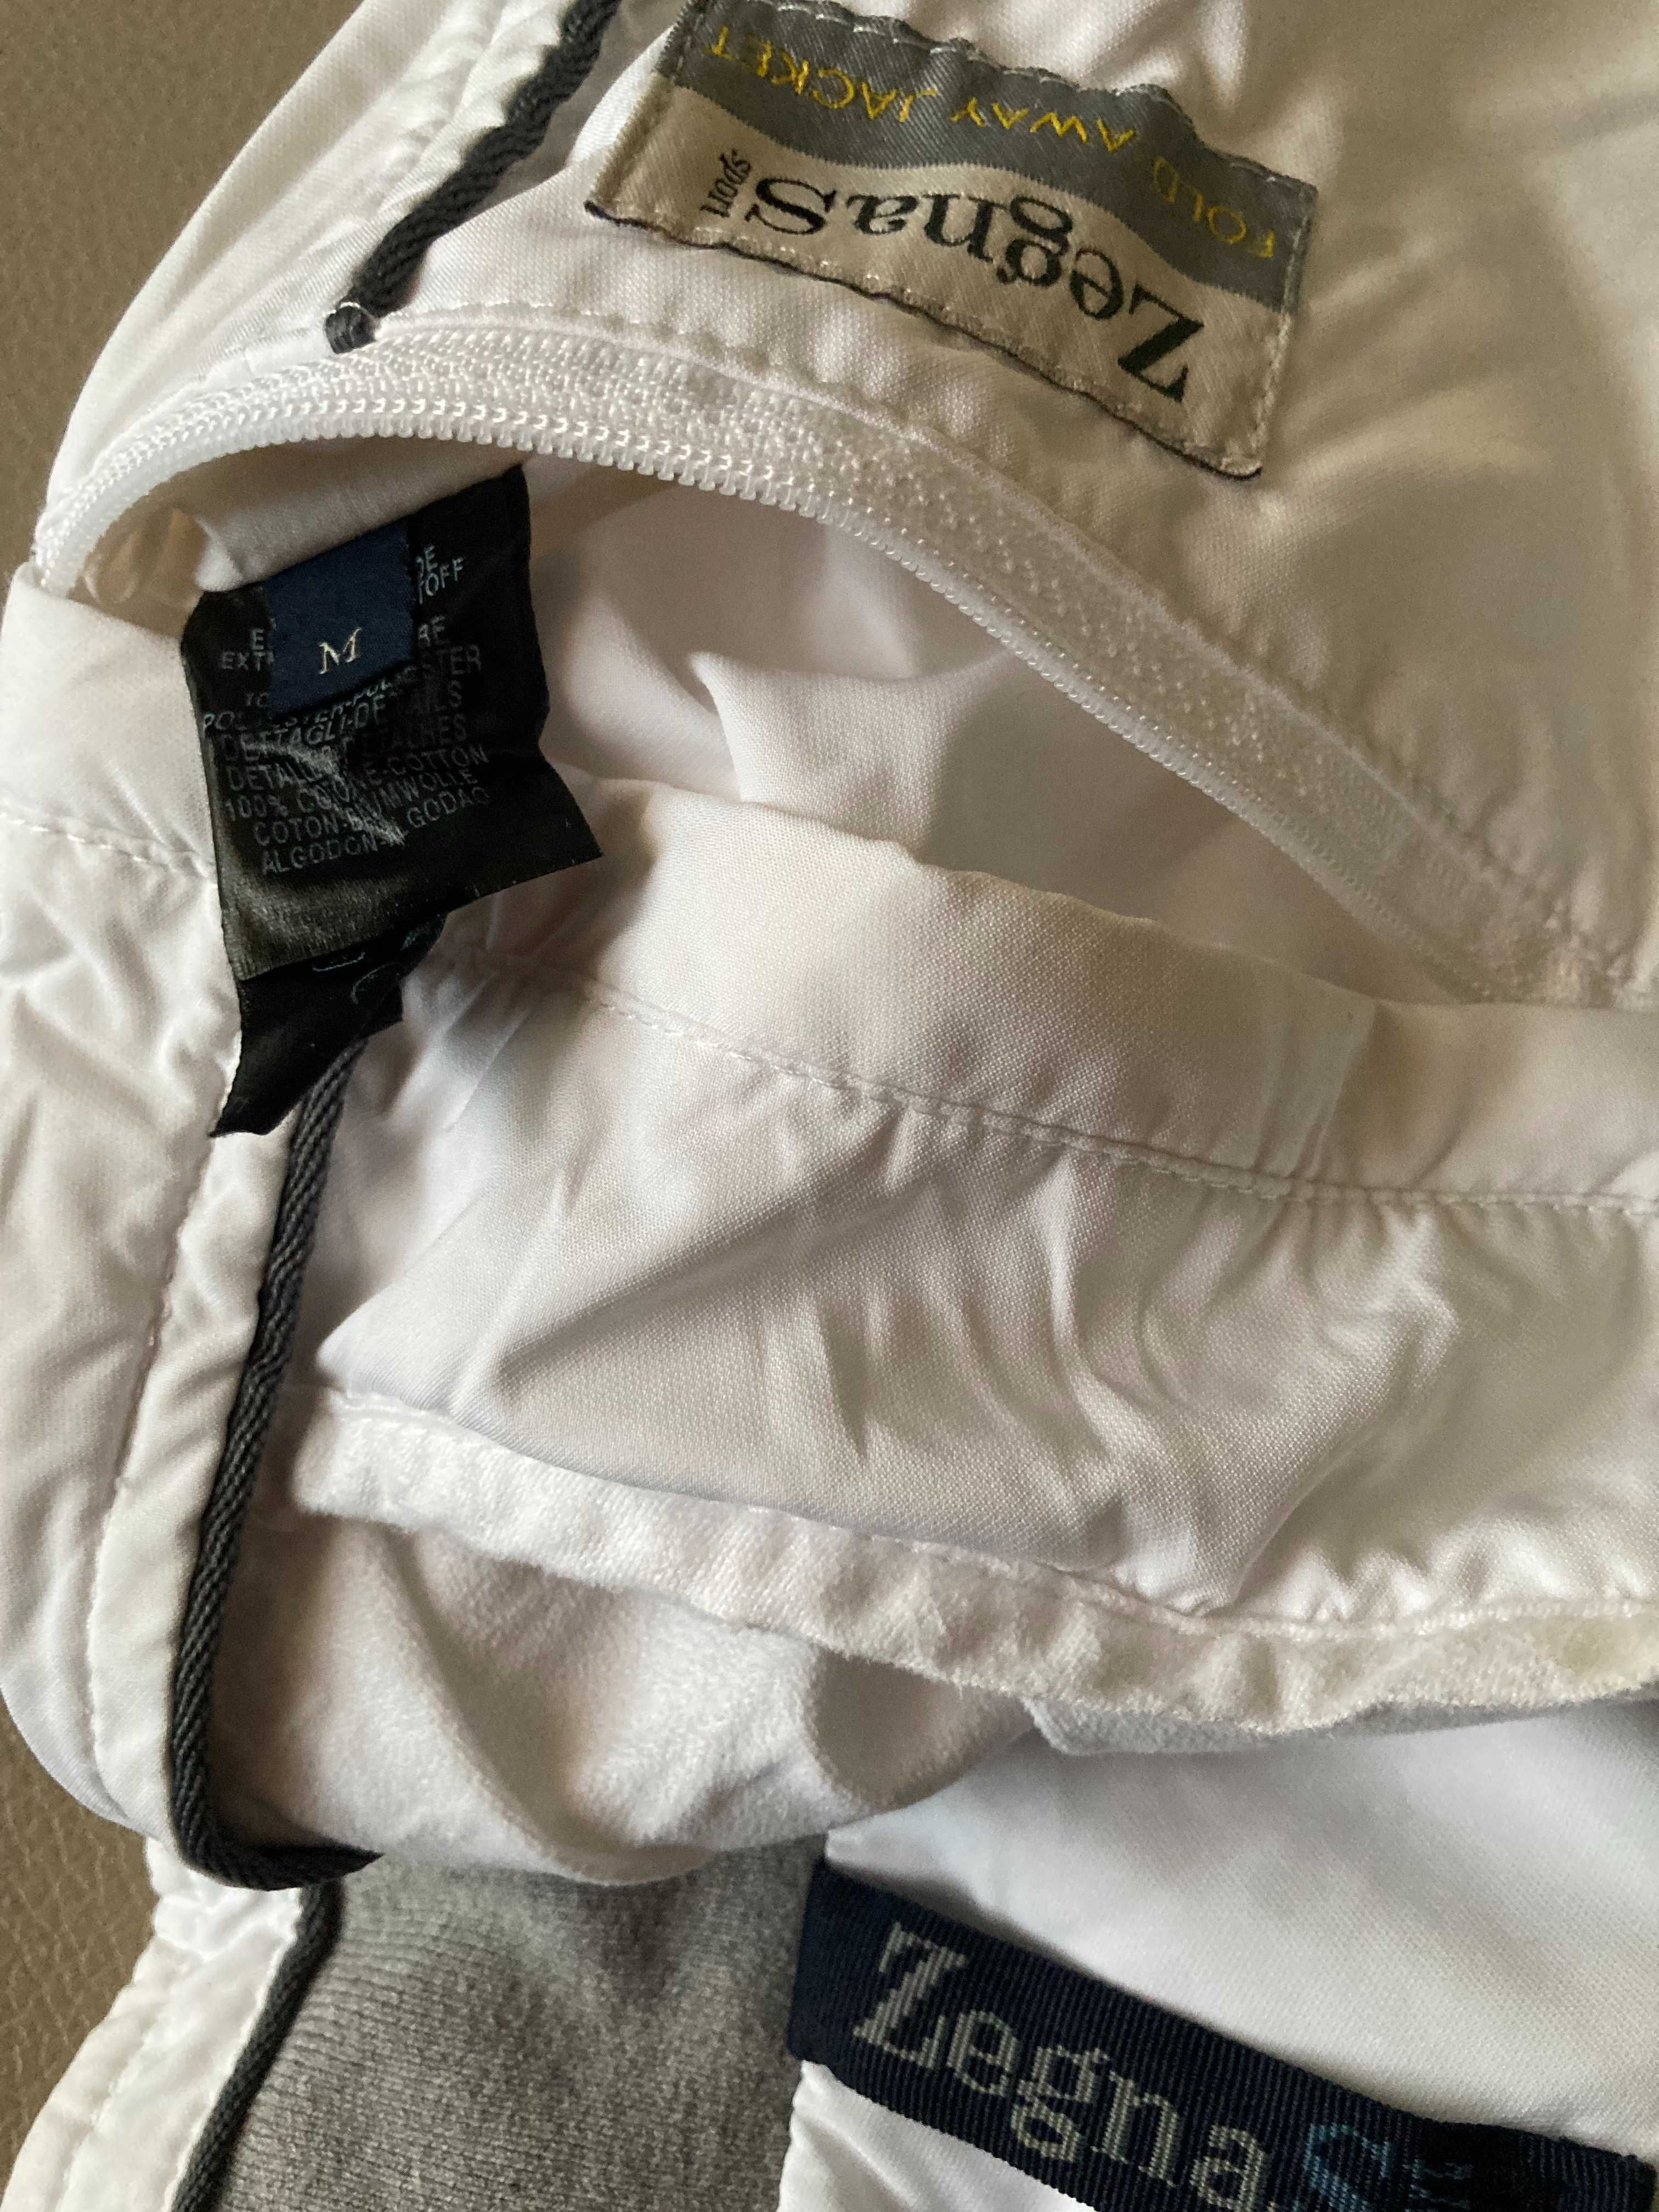 Куртка ветровка Zegna Sport fold away jacket р M белая